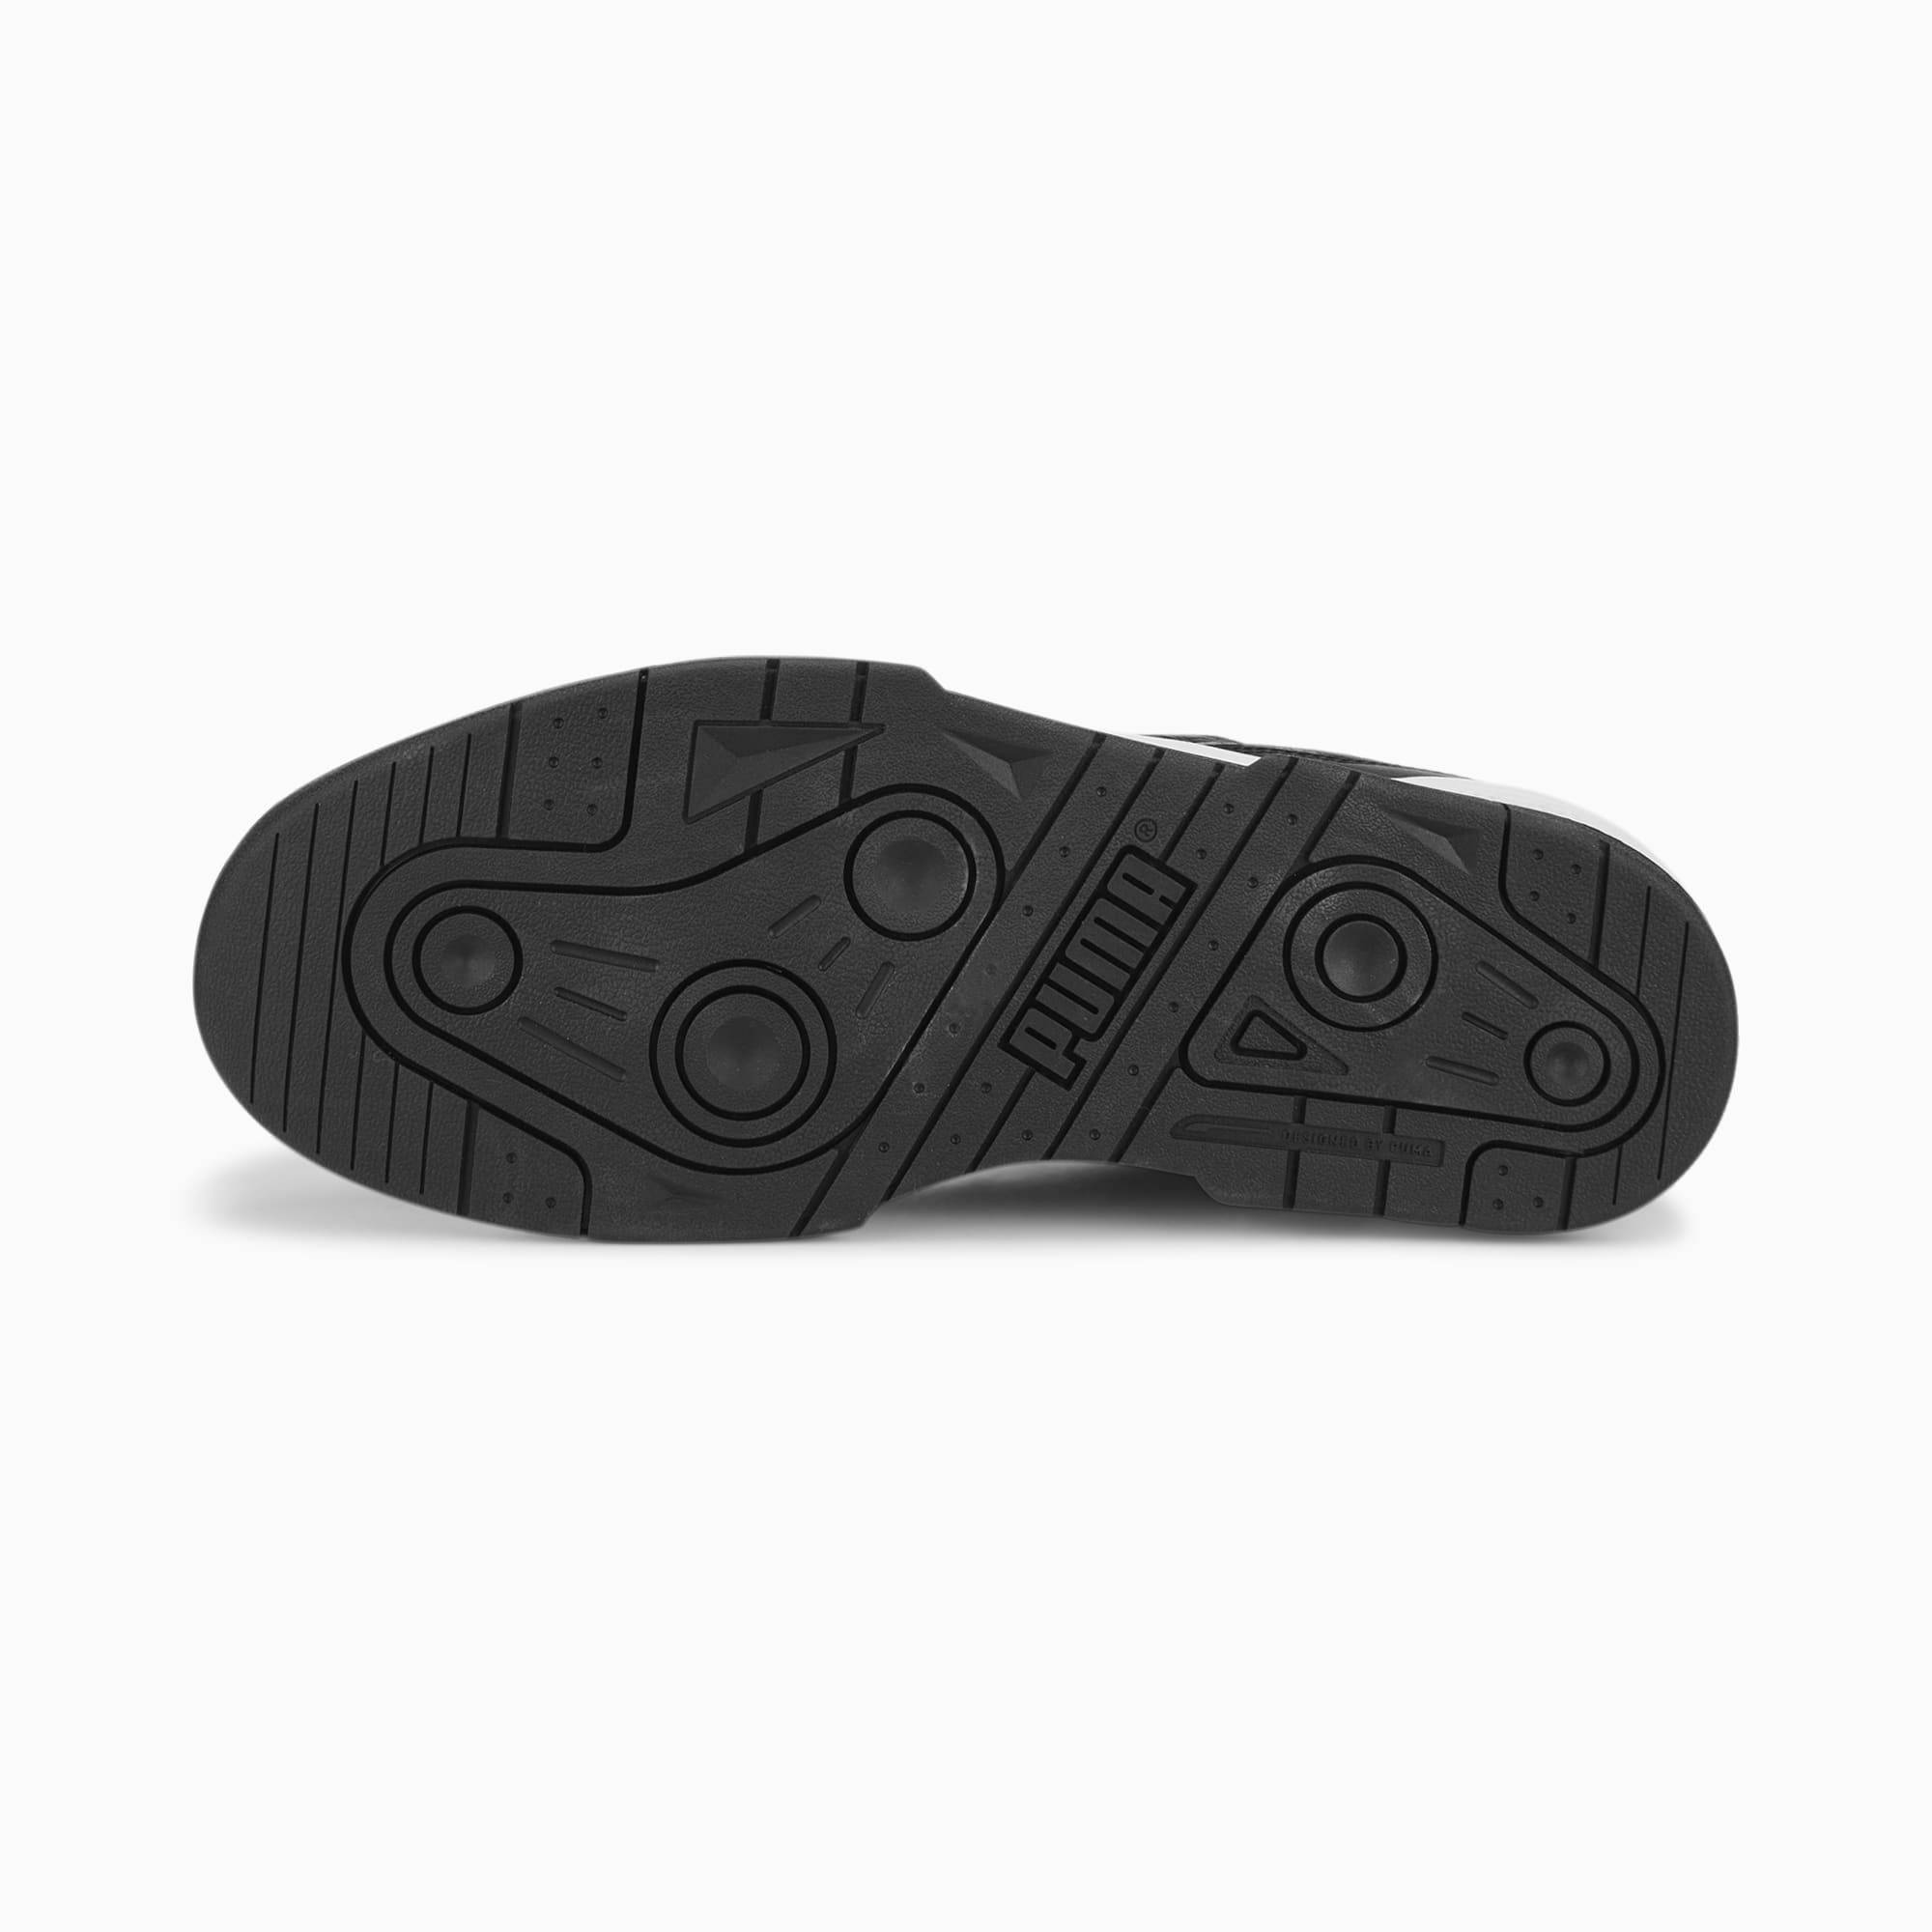 PUMA Zapatillas Slipstream Leather, Blanco/Negro